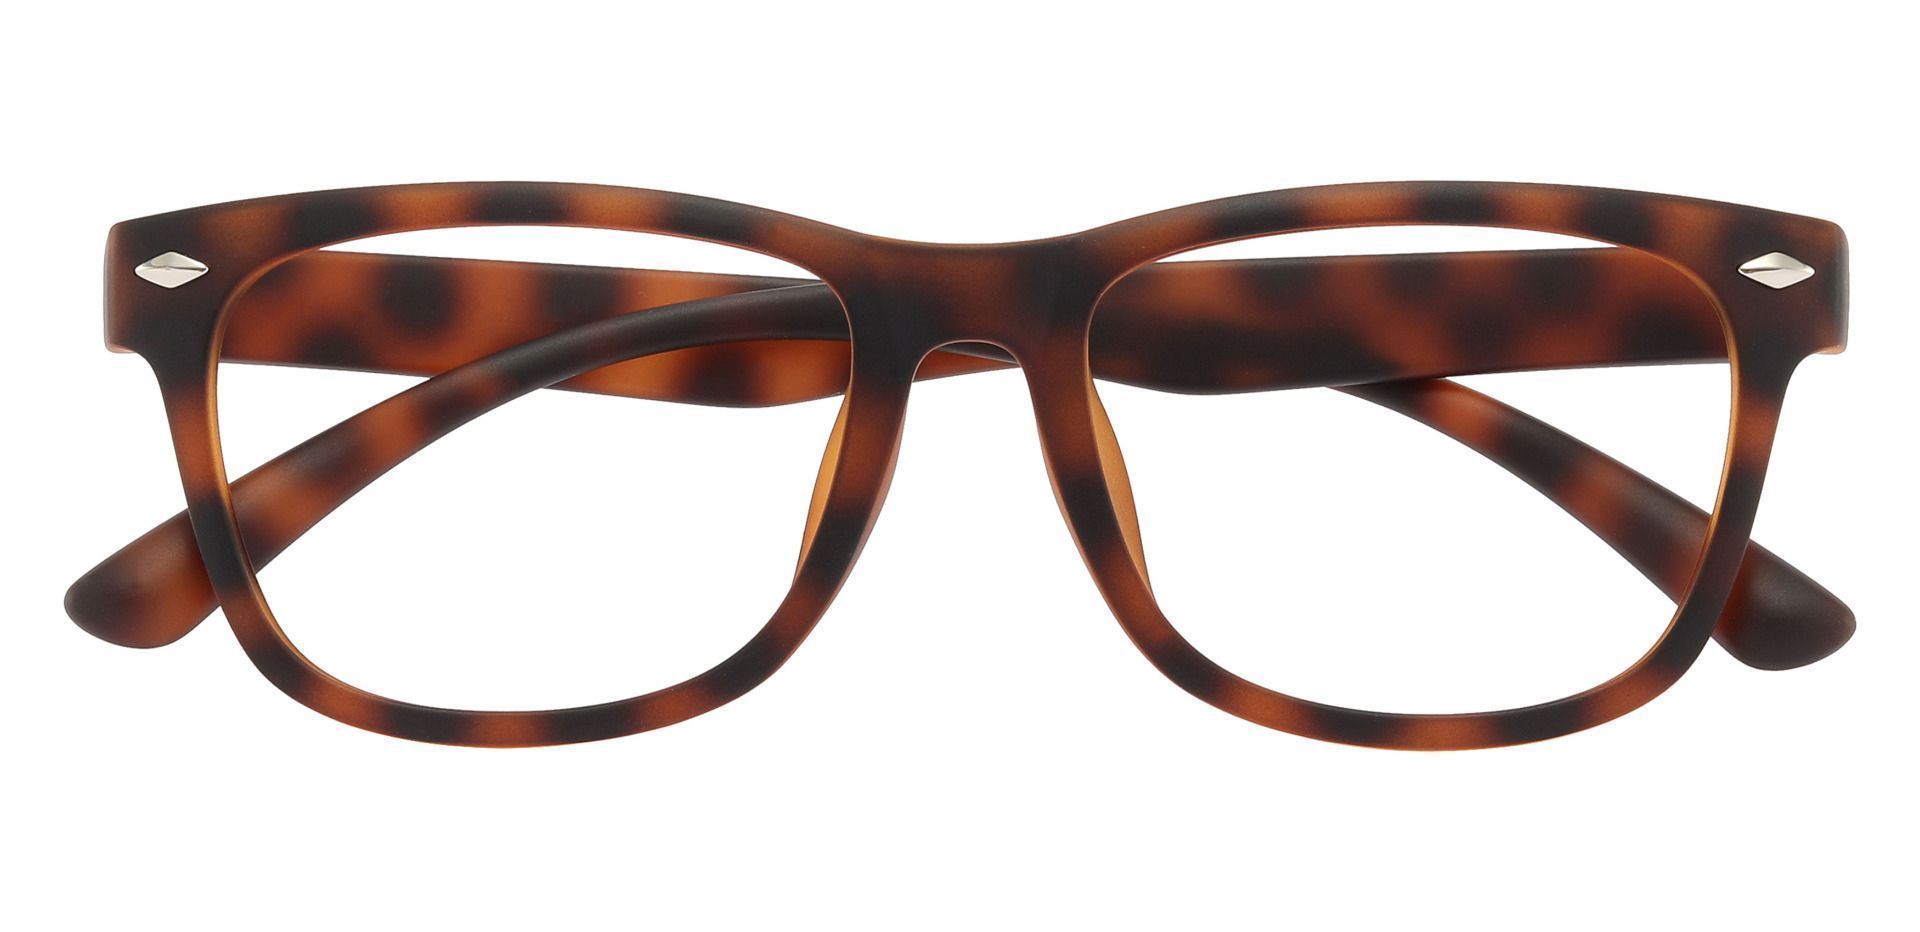 Shaler Square Eyeglasses Frame - Tortoise